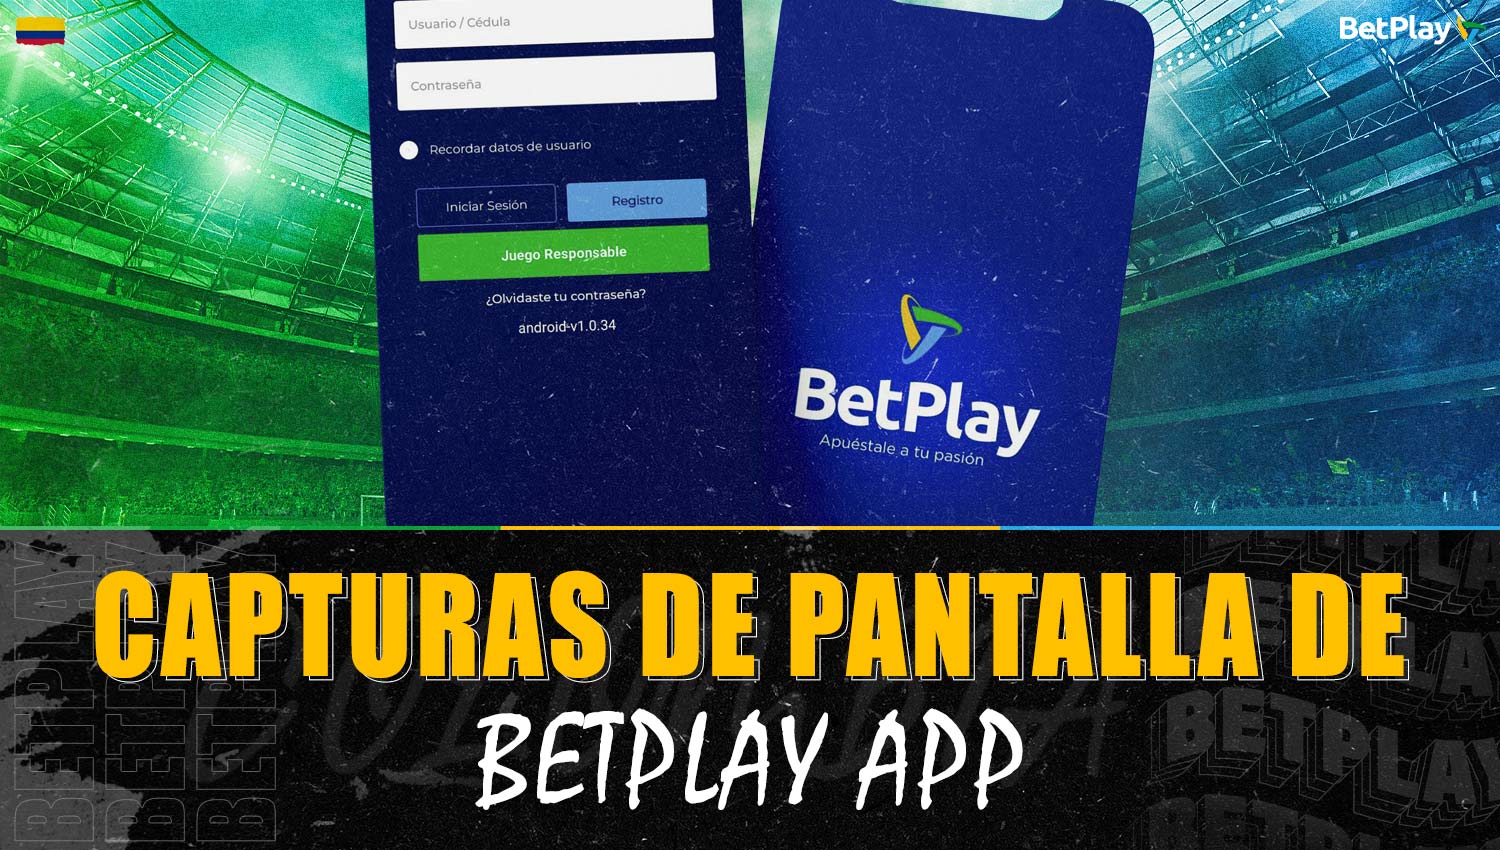 Capturas de pantalla de la aplicación Betplay Colombia: apariencia, características, funcionalidades e interfaz